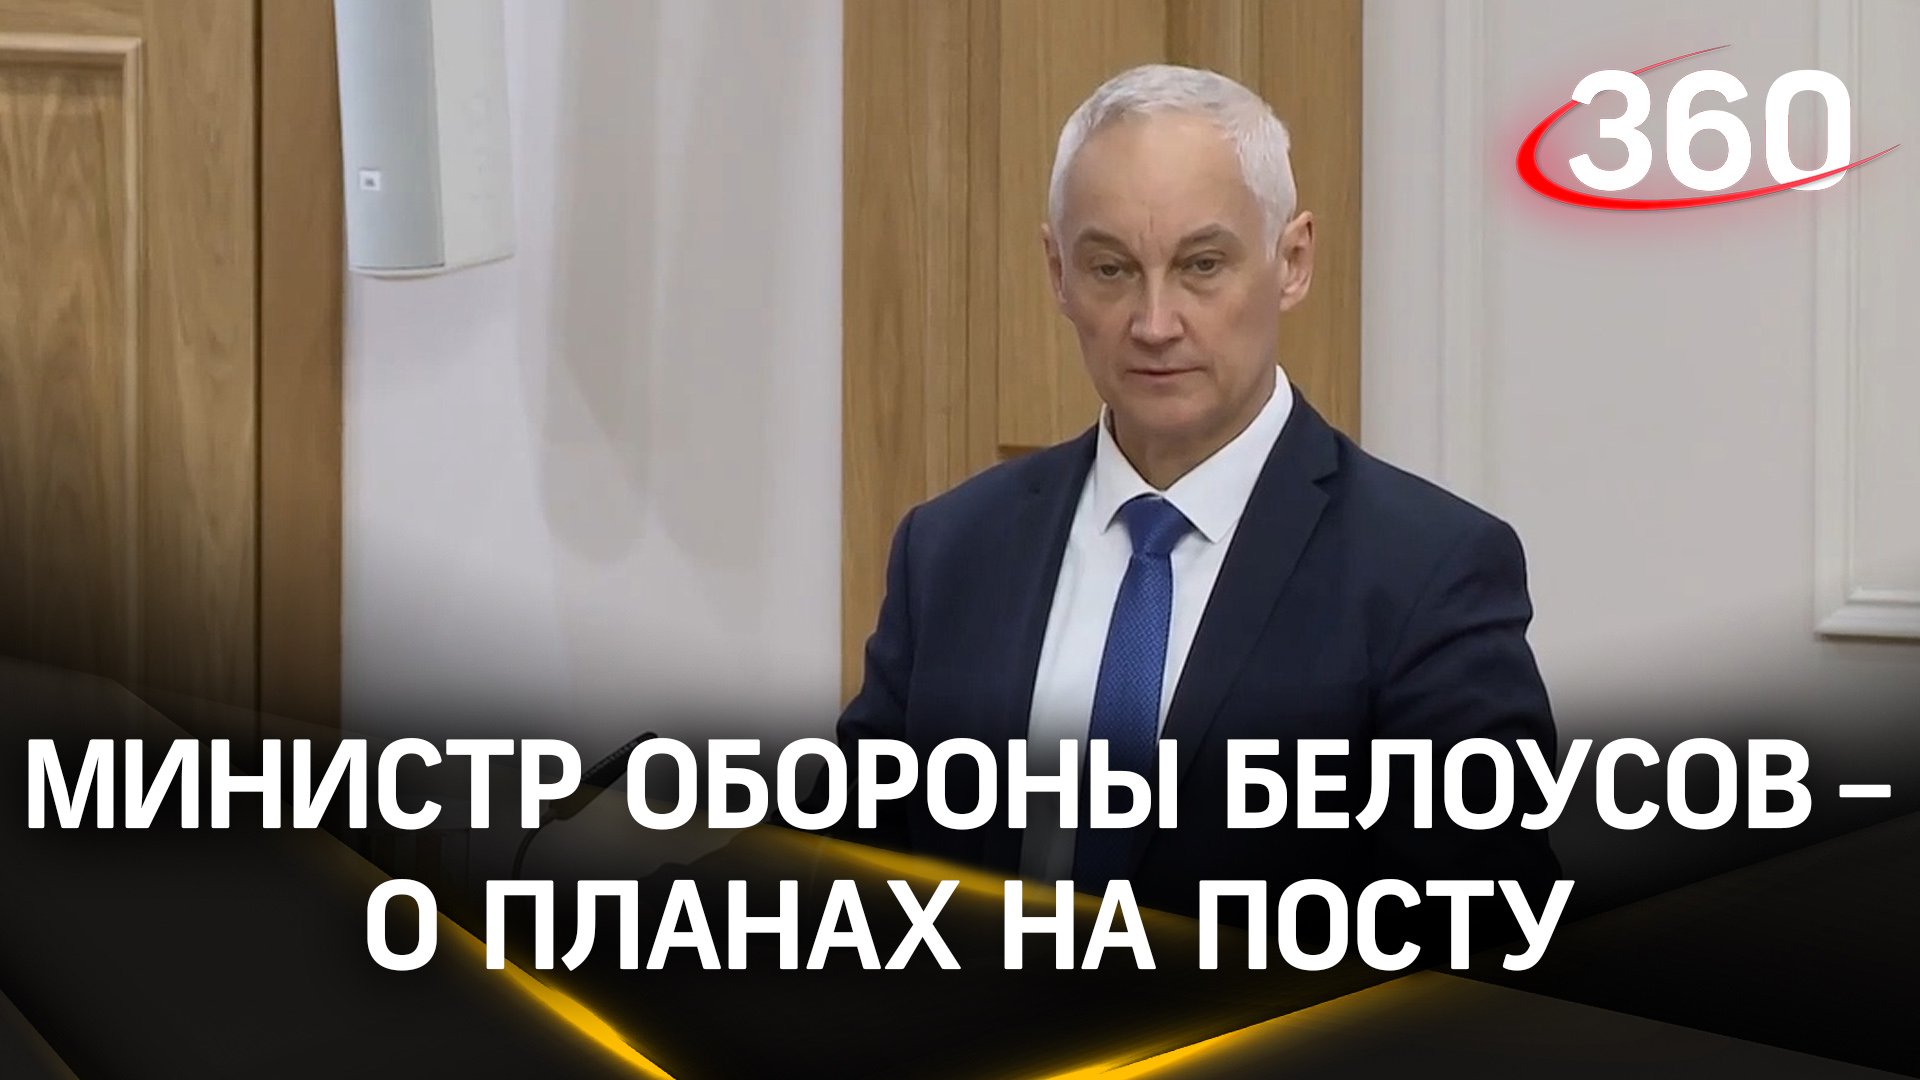 Госдума утвердила новый состав Правительства. Новый министр обороны Белоусов – о своих планах